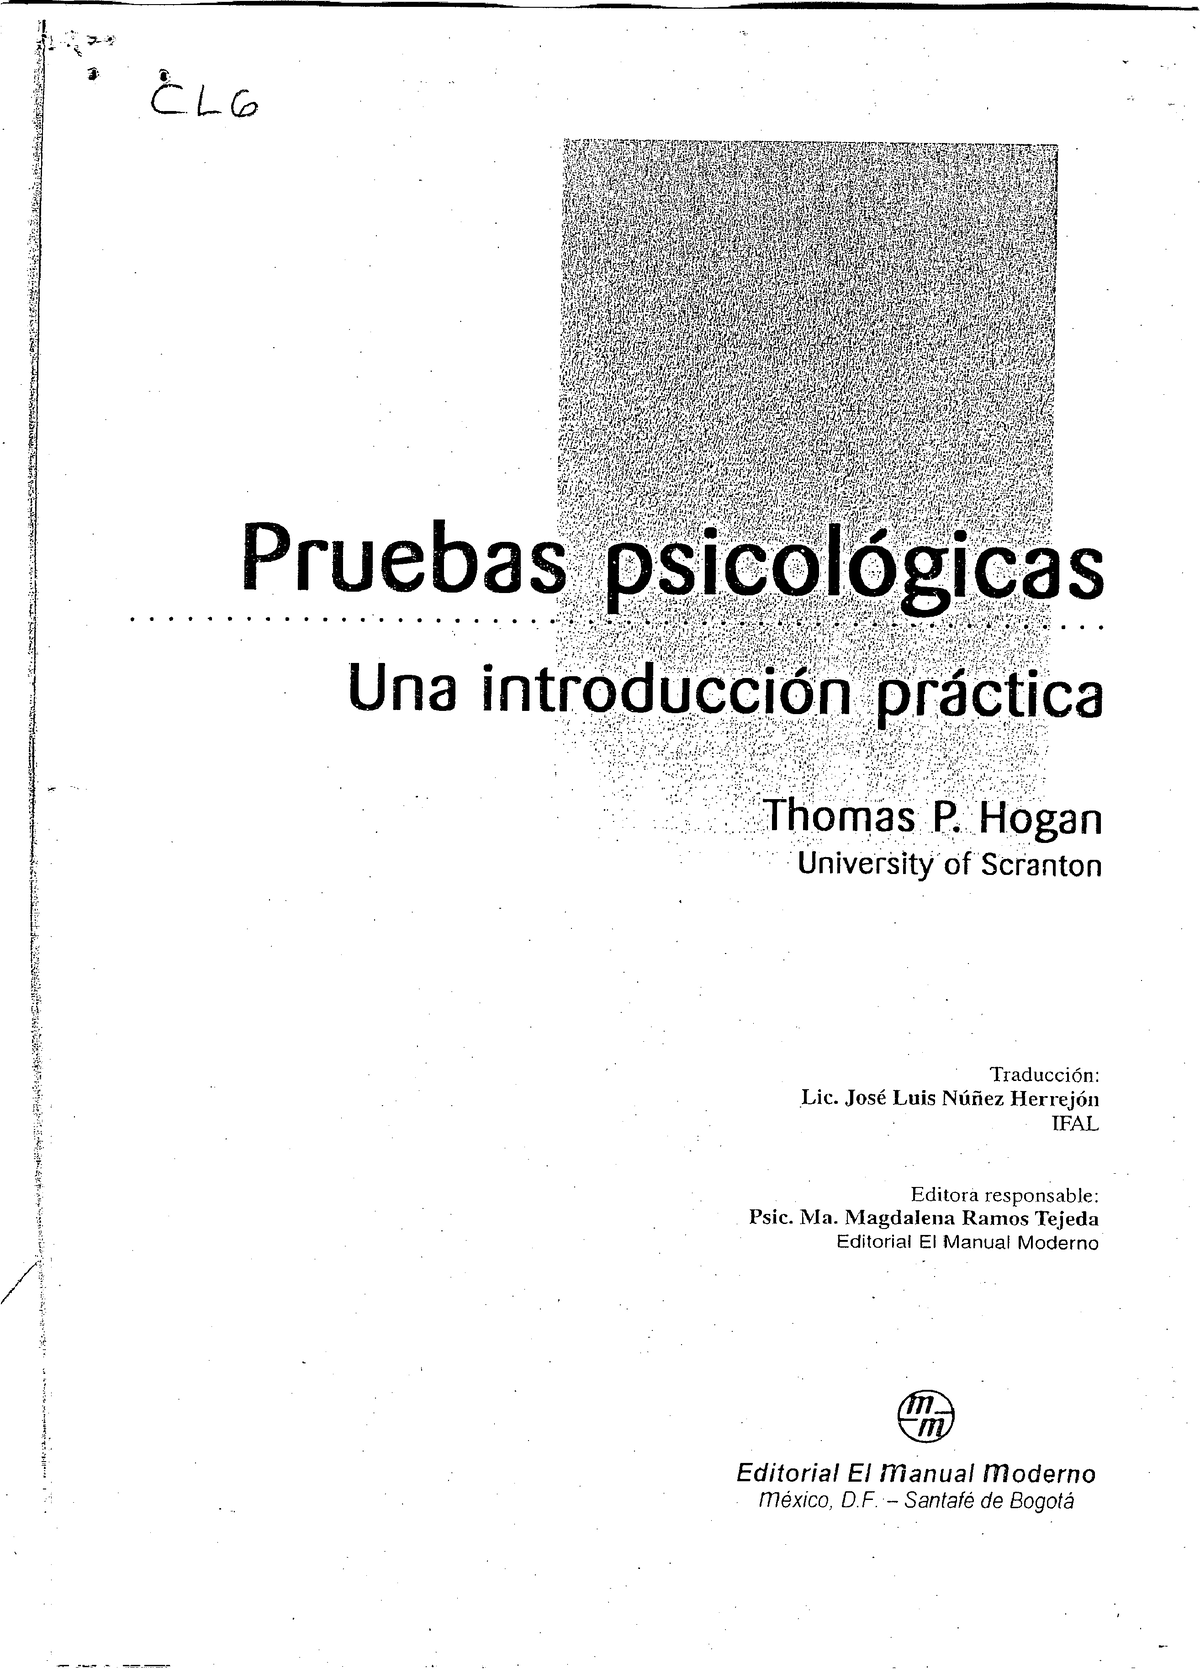 Hogan Pruebas Psicologicas Una Introduccion Practica Capitulo 6 Pru E Bas~~ltsfb 9452